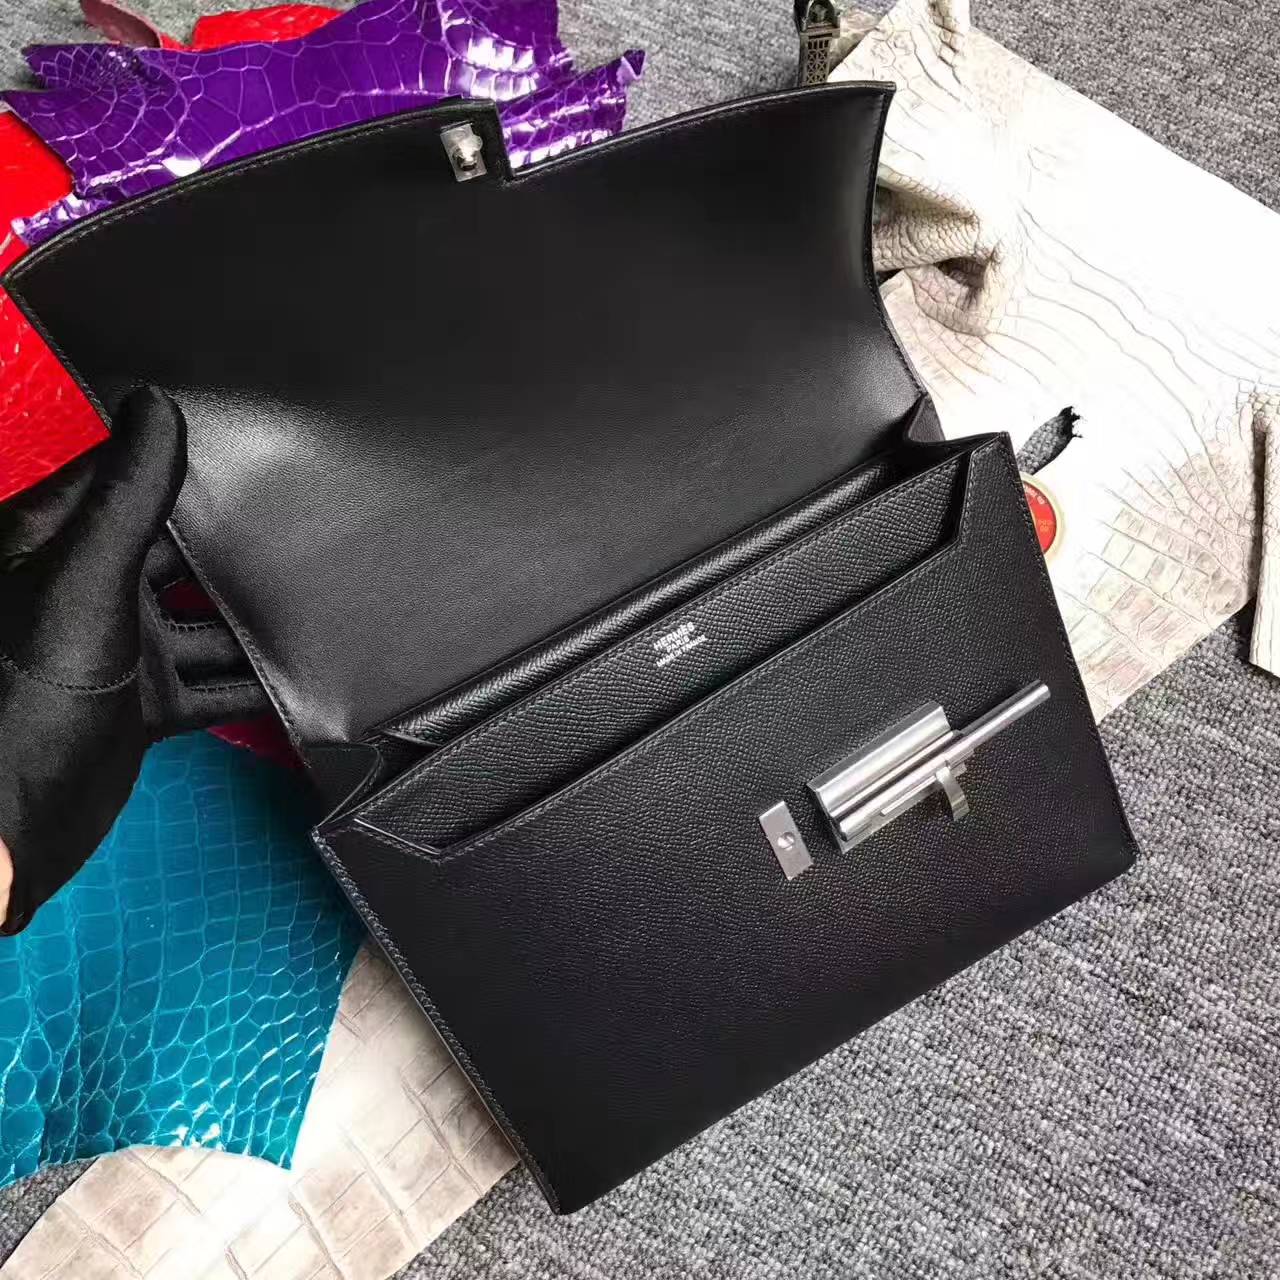 New Arrival Hermes Verrou Bag 24cm in CK89 Black Epsom Leather